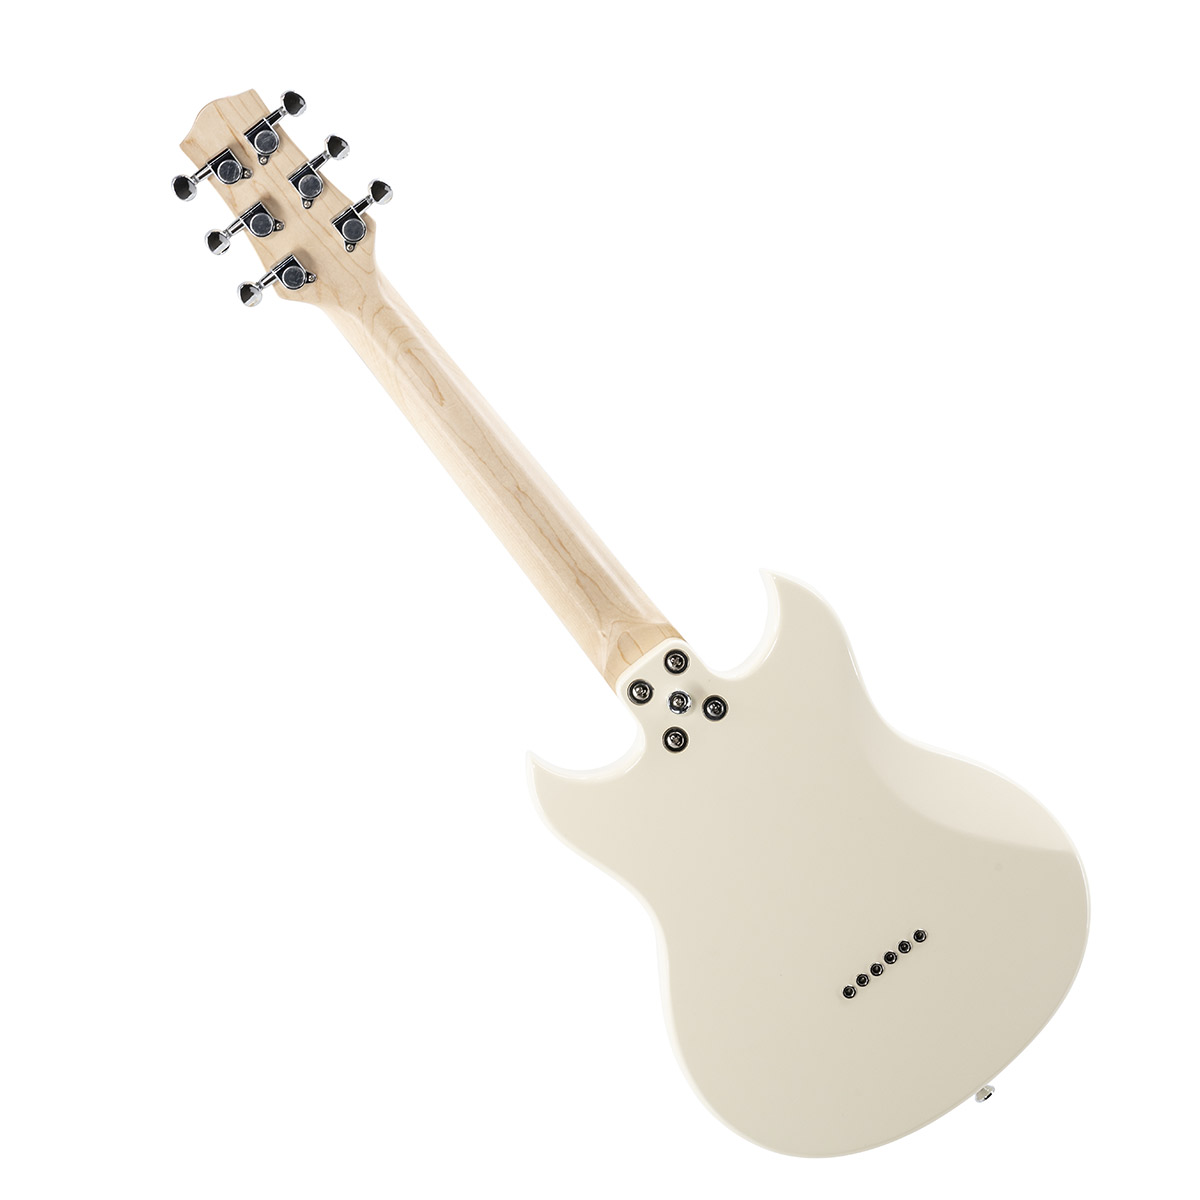 VOX SDC-1 MINI WH (White) ミニエレキギター トラベルギター ショートスケール ホワイト キャリーバッグ付属 ボックス